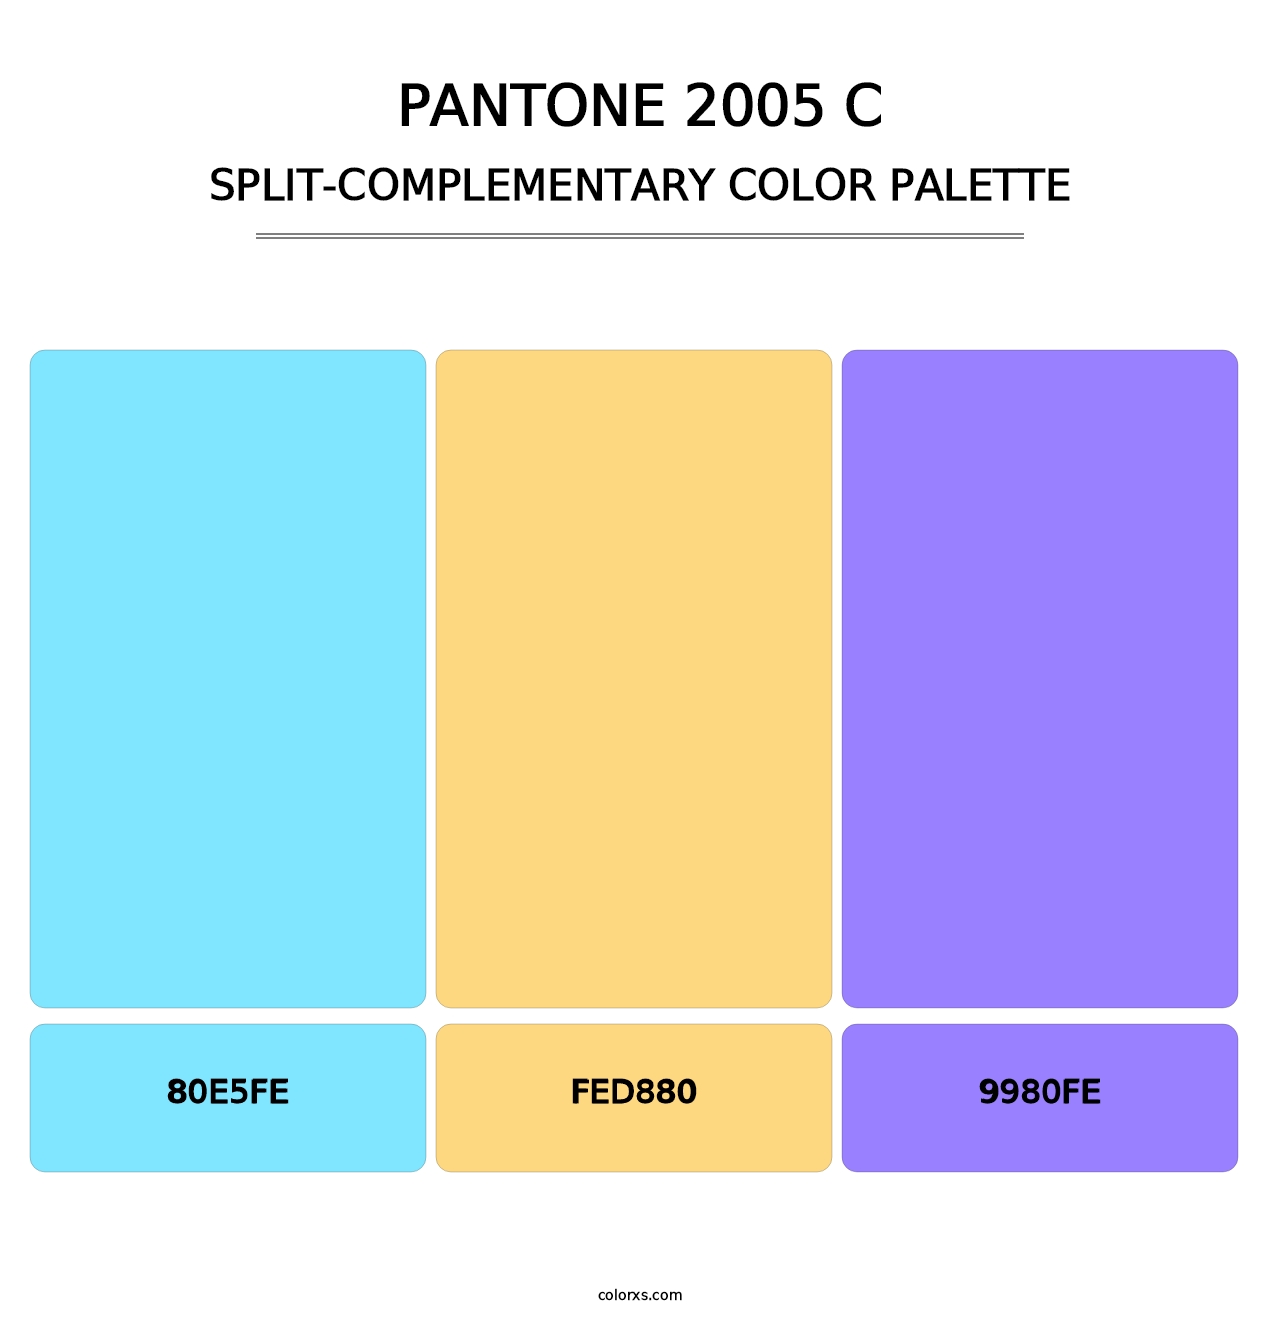 PANTONE 2005 C - Split-Complementary Color Palette